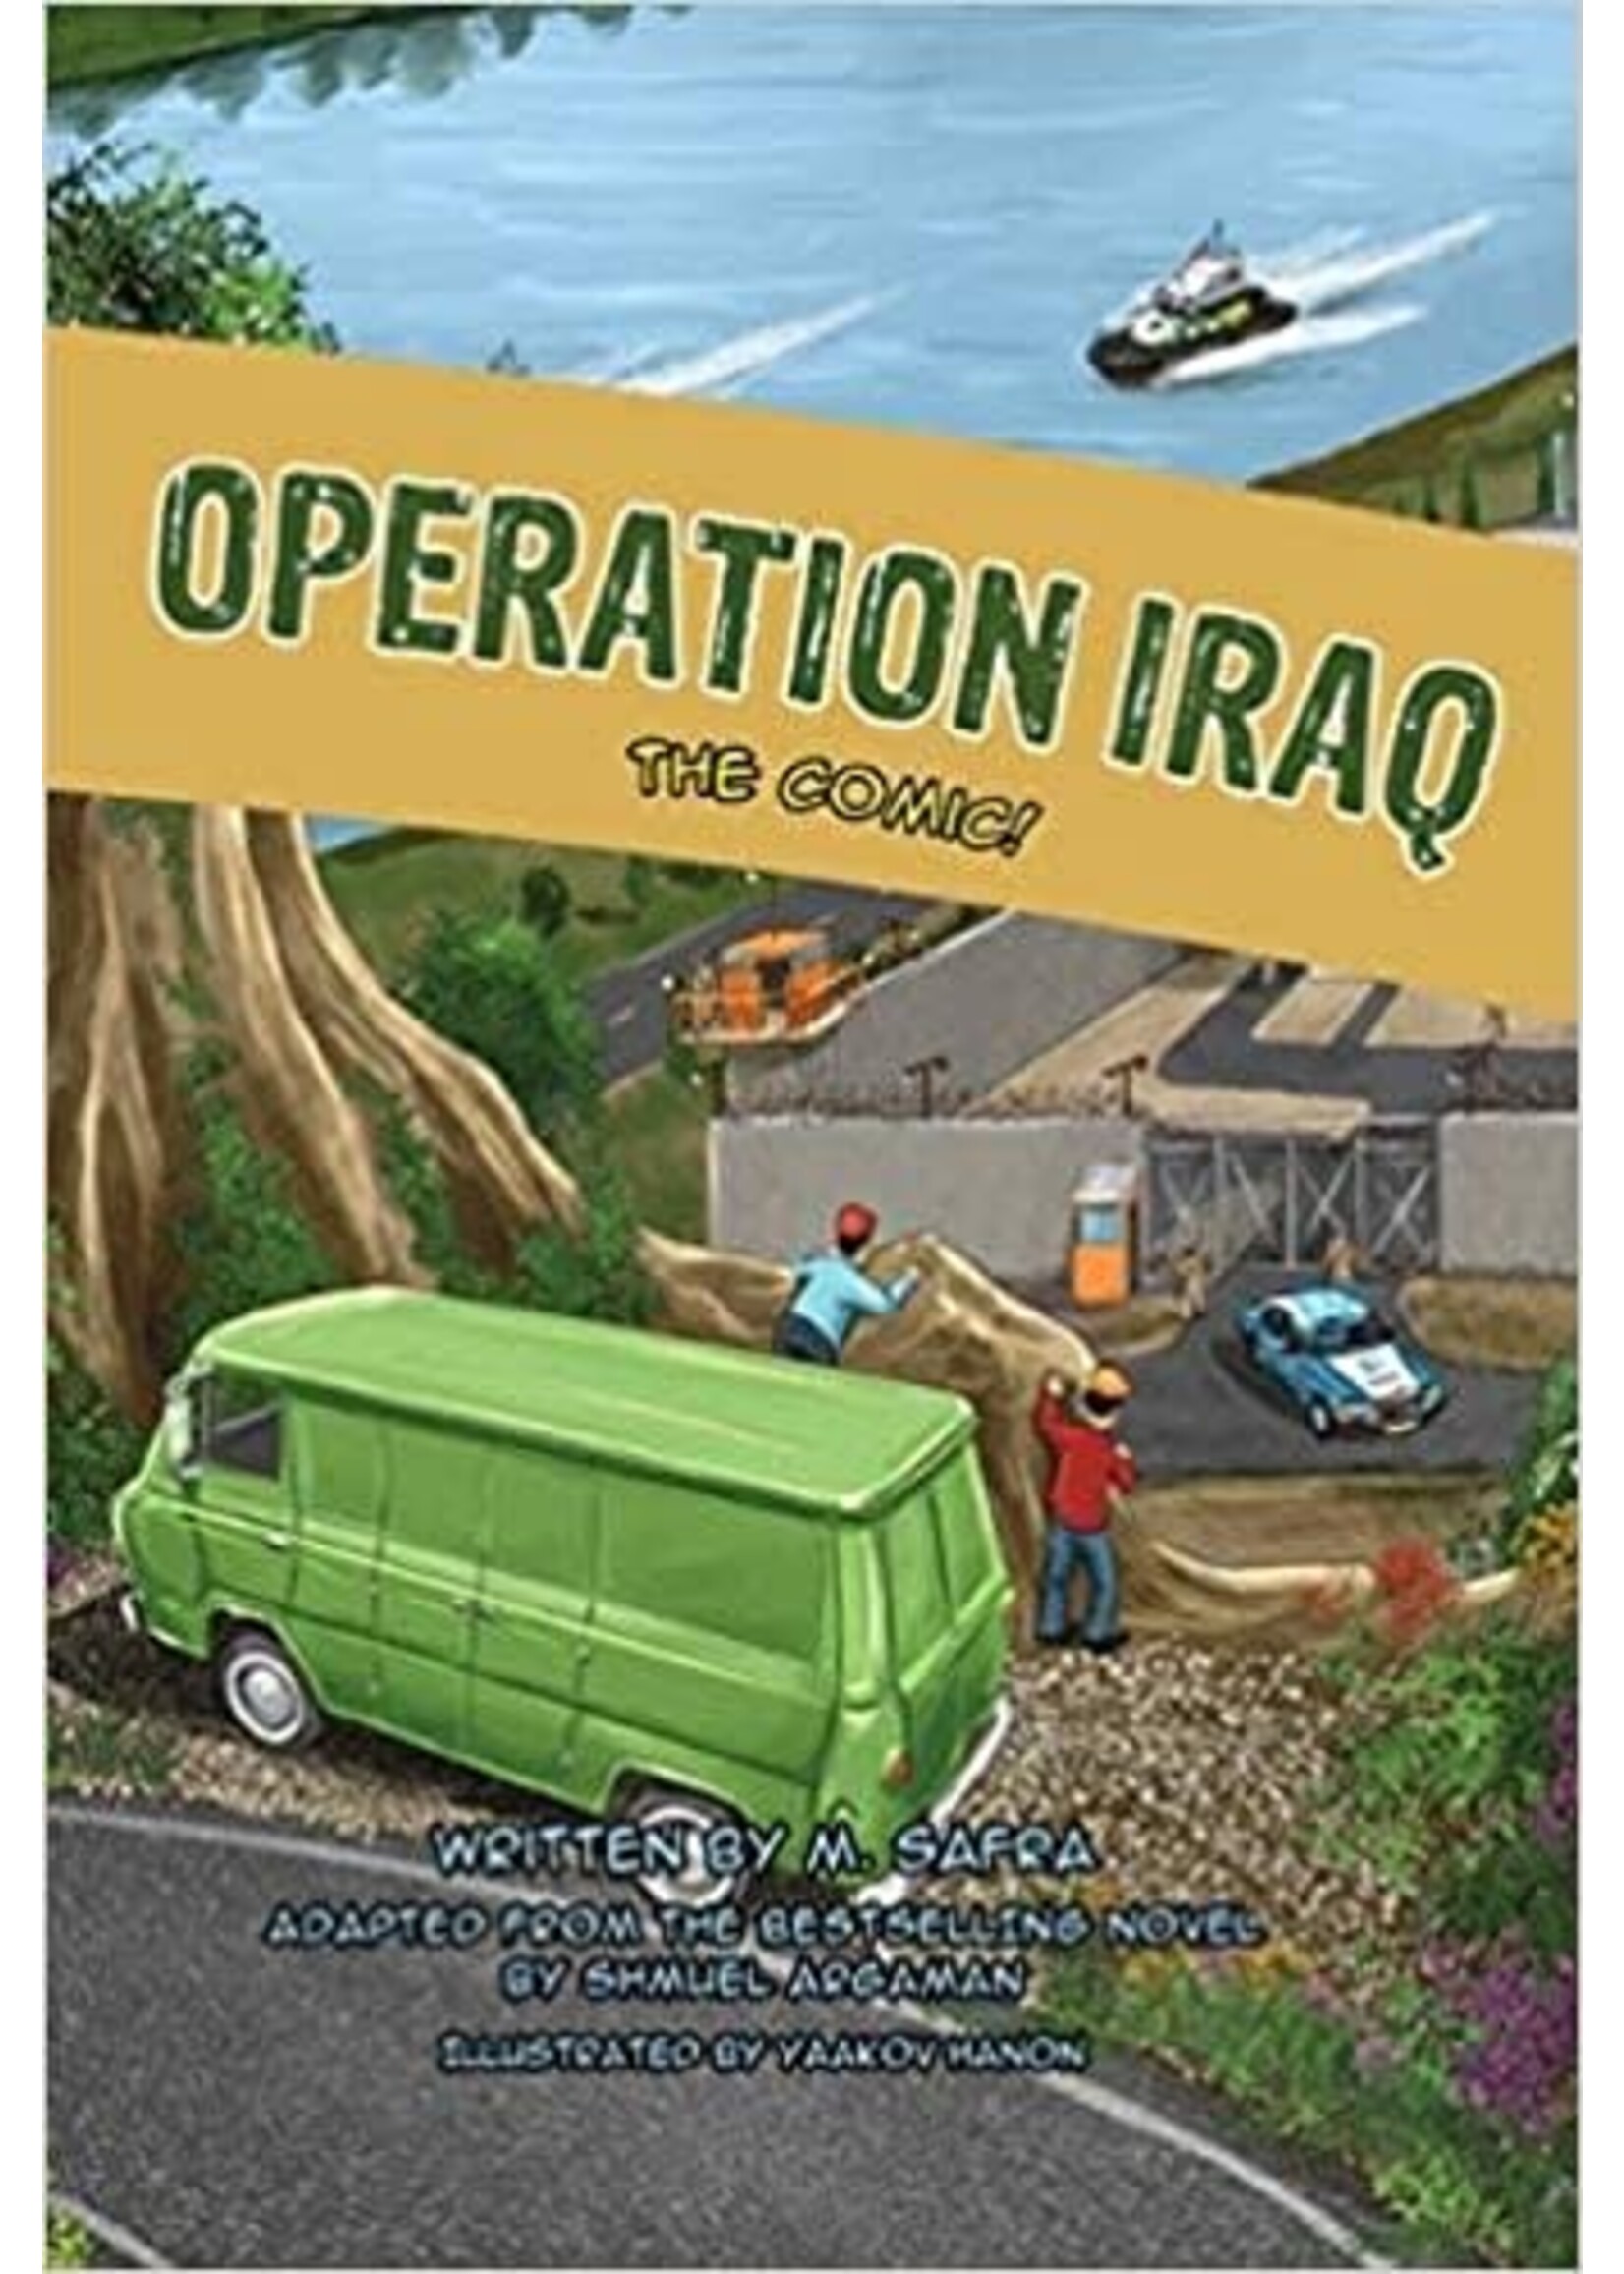 OPERATION IRAQ - COMICS